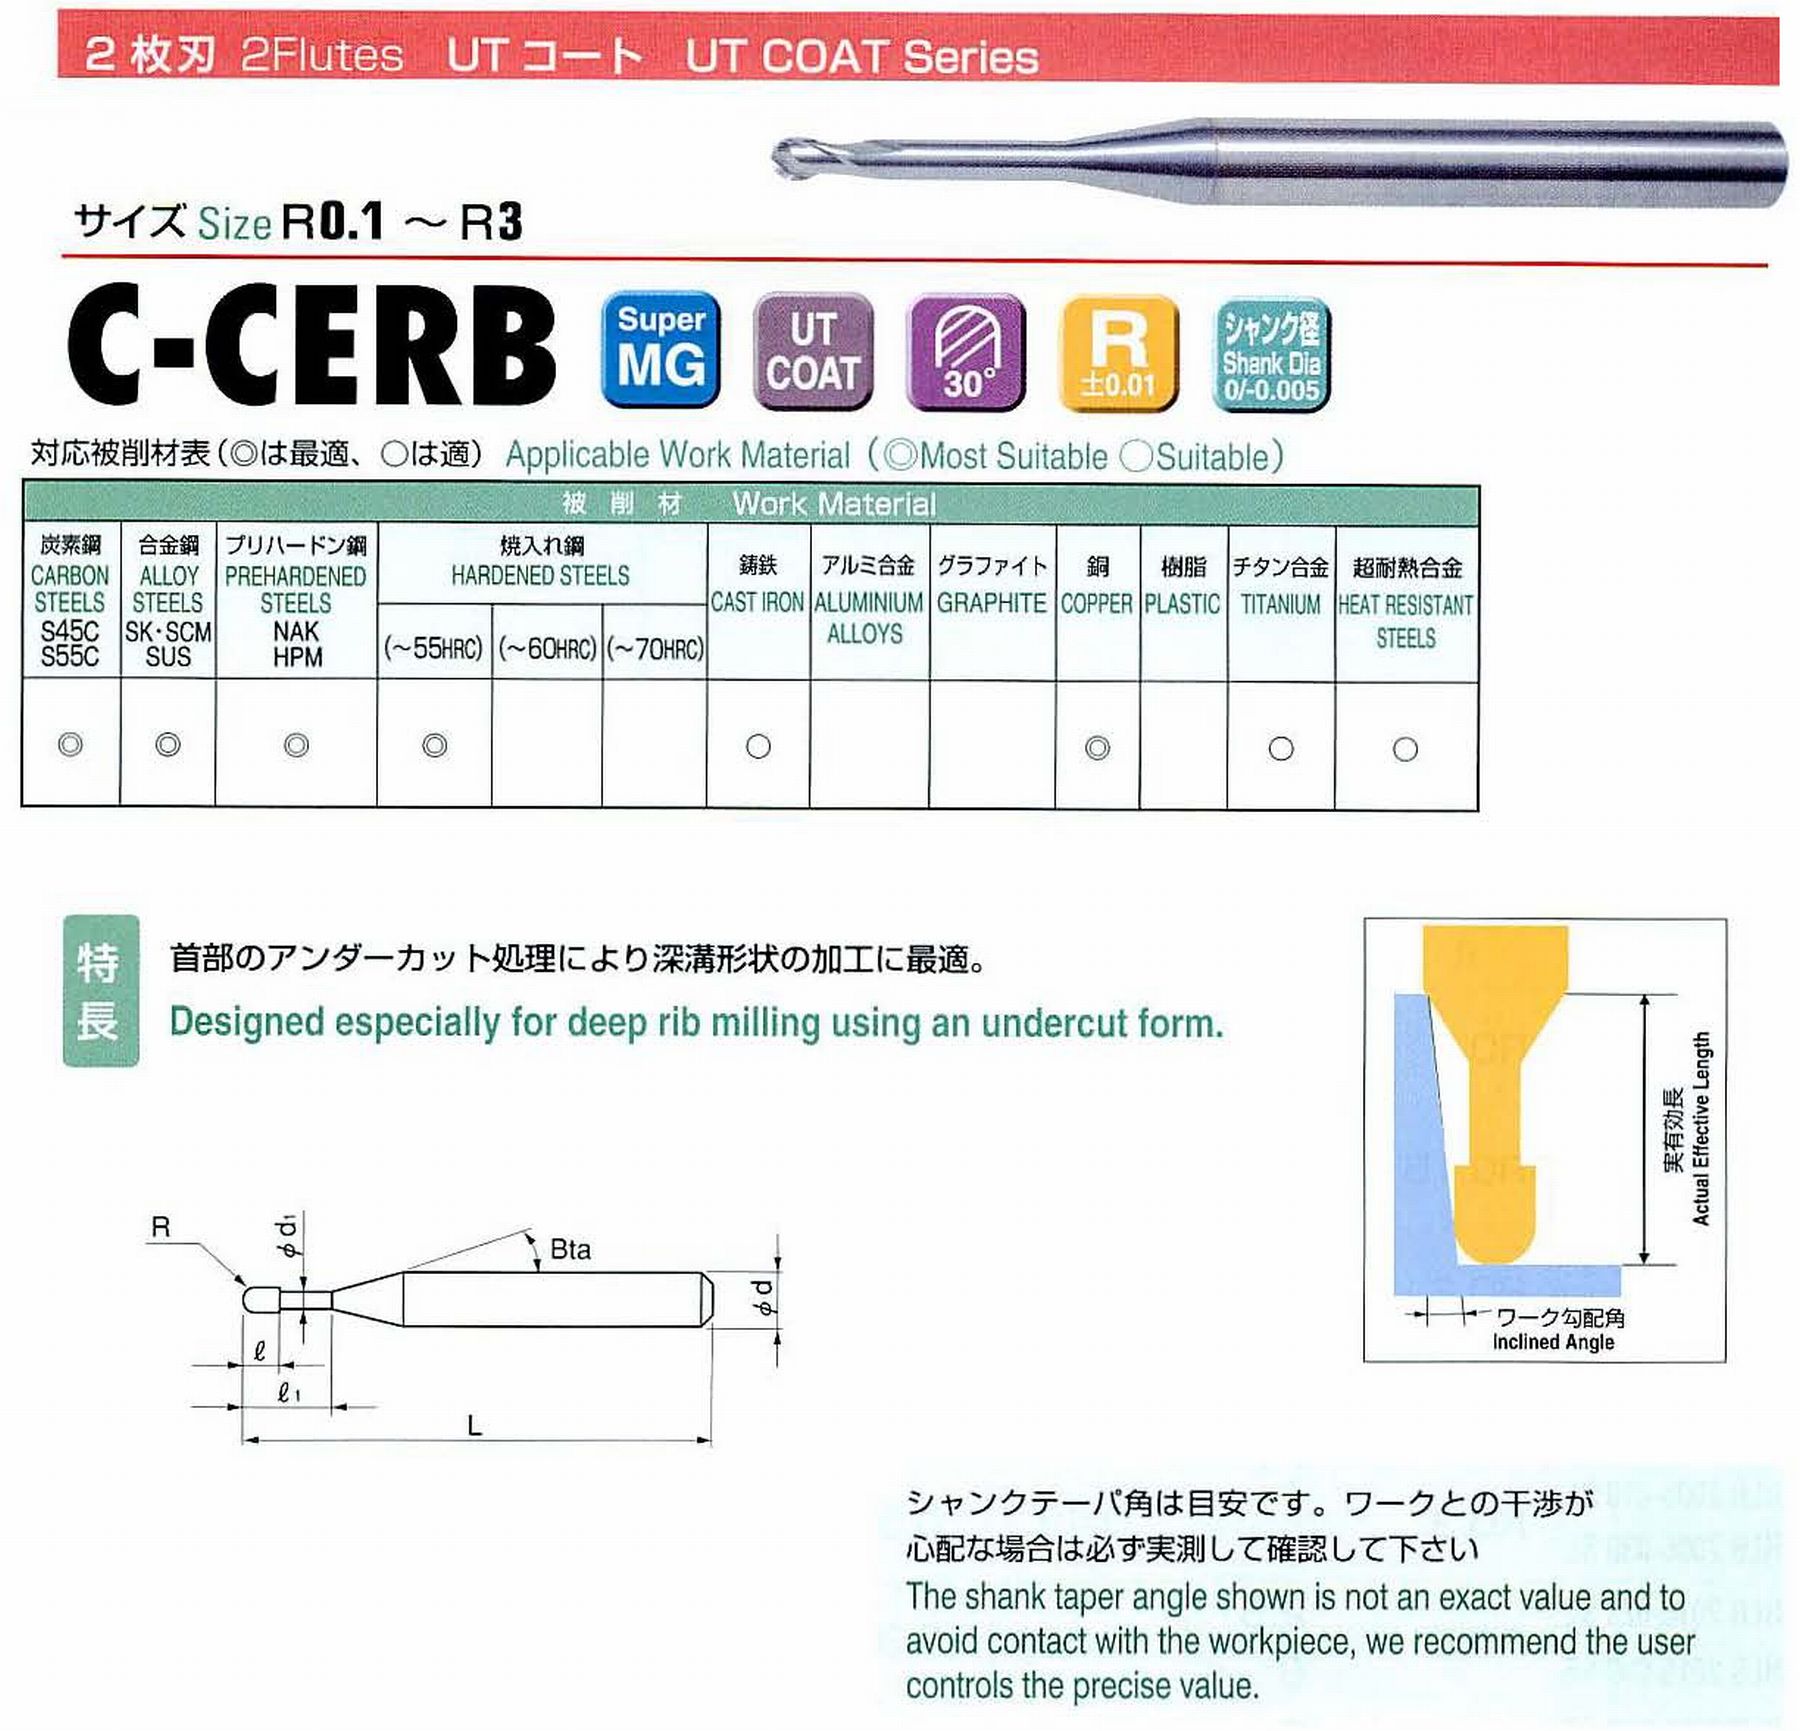 ユニオンツール 2枚刃 C-CERB2003-0.5 ボール半径R0.15 有効長0.5 刃長0.24 首径0.27 シャンクテーパ角16° 全長45 シャンク径4